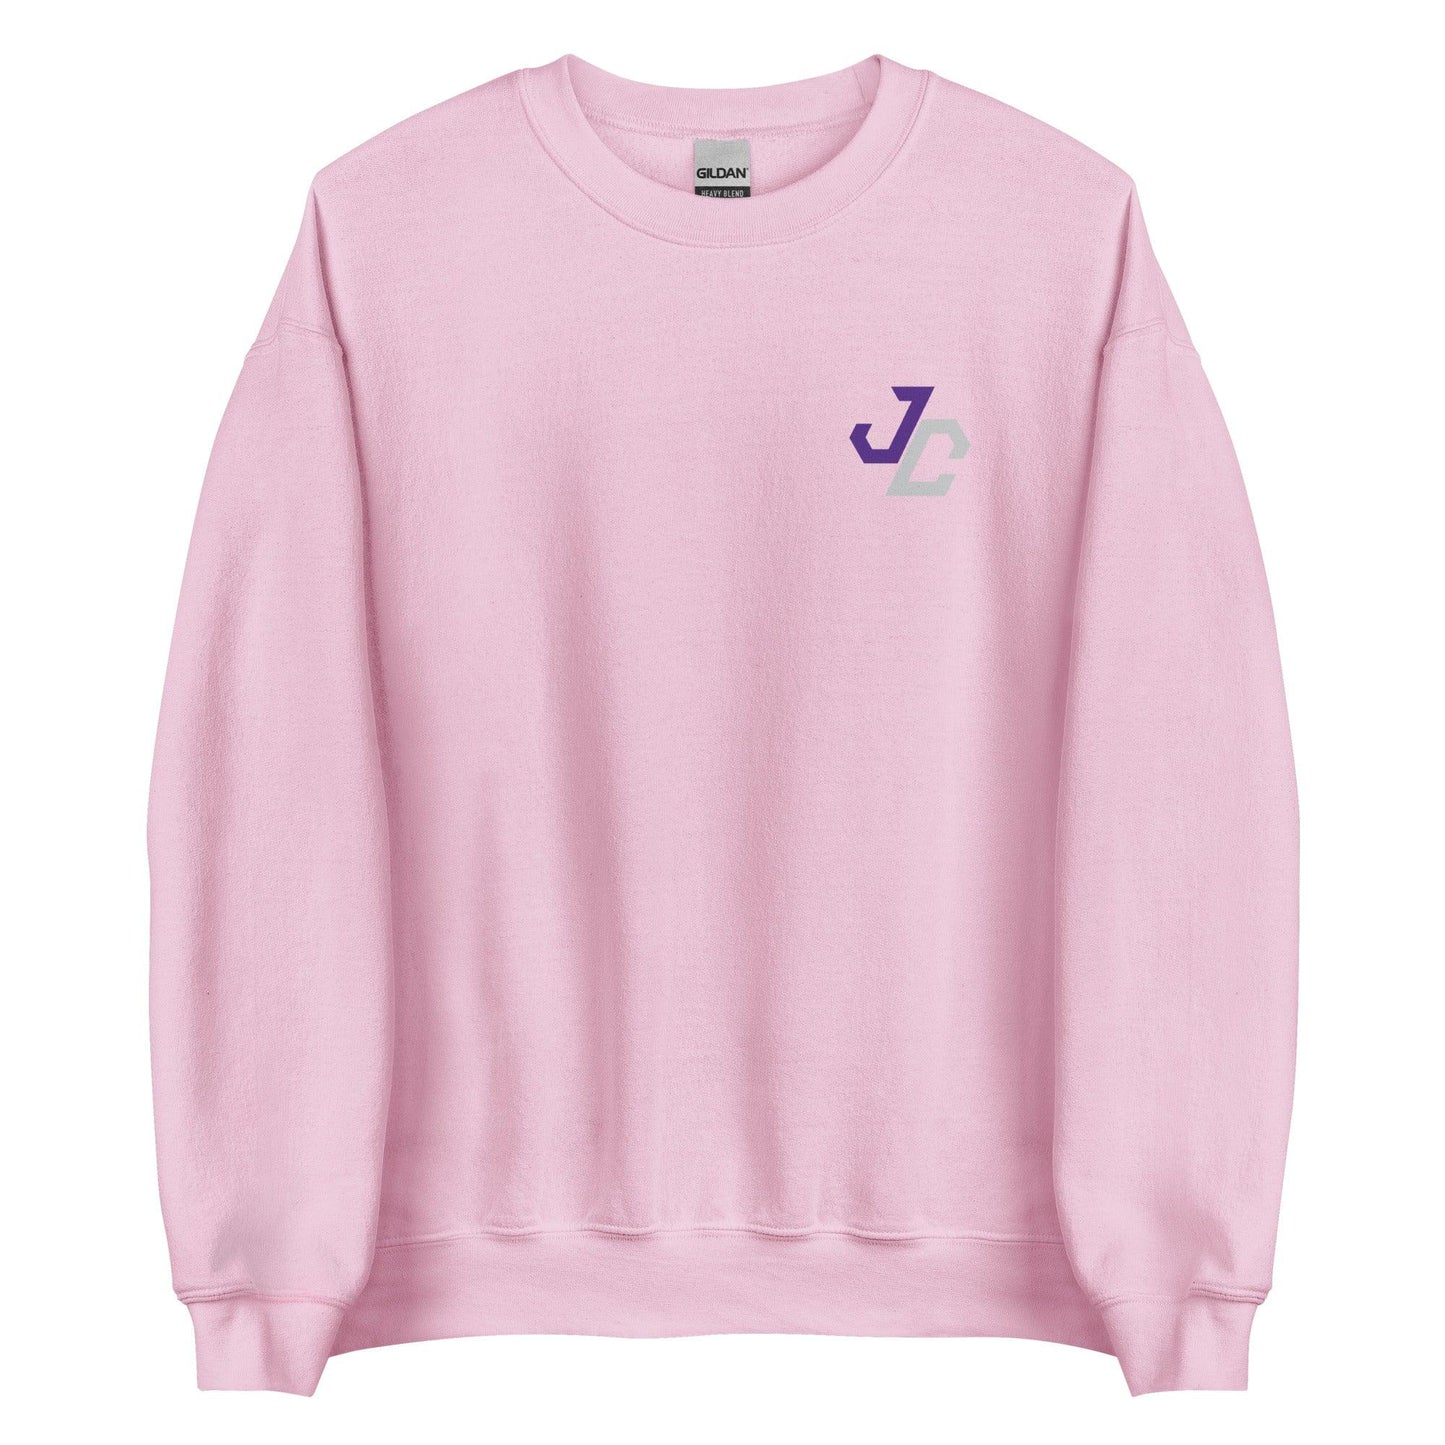 Jed Castles "Essential" Sweatshirt - Fan Arch